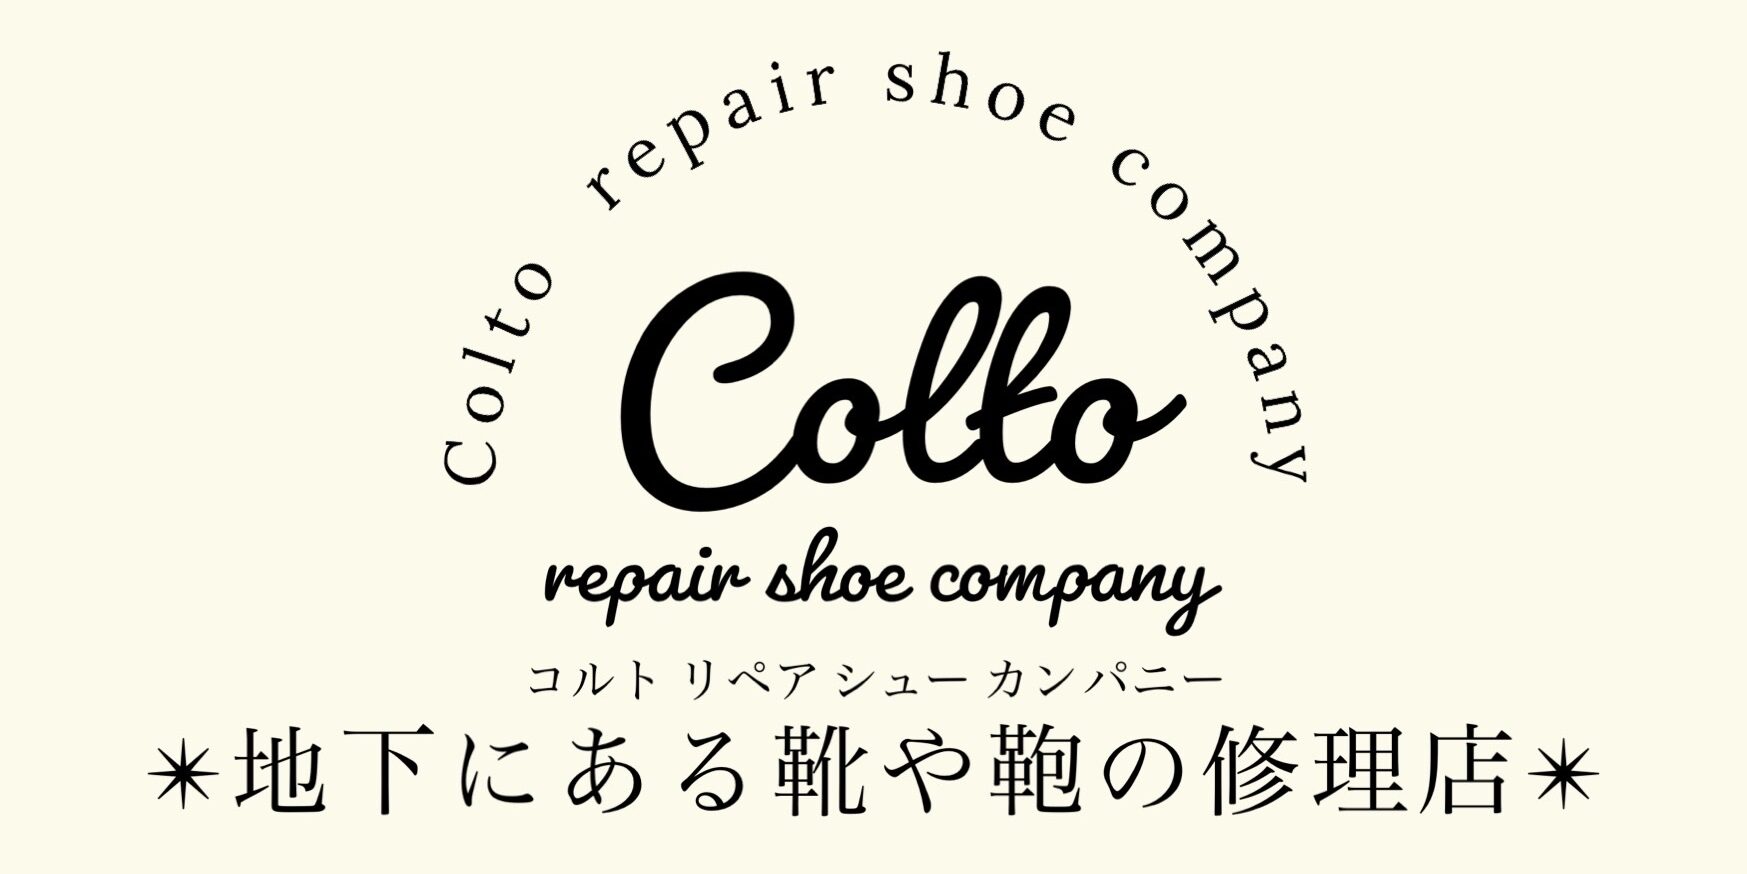 Colto repair shoe company